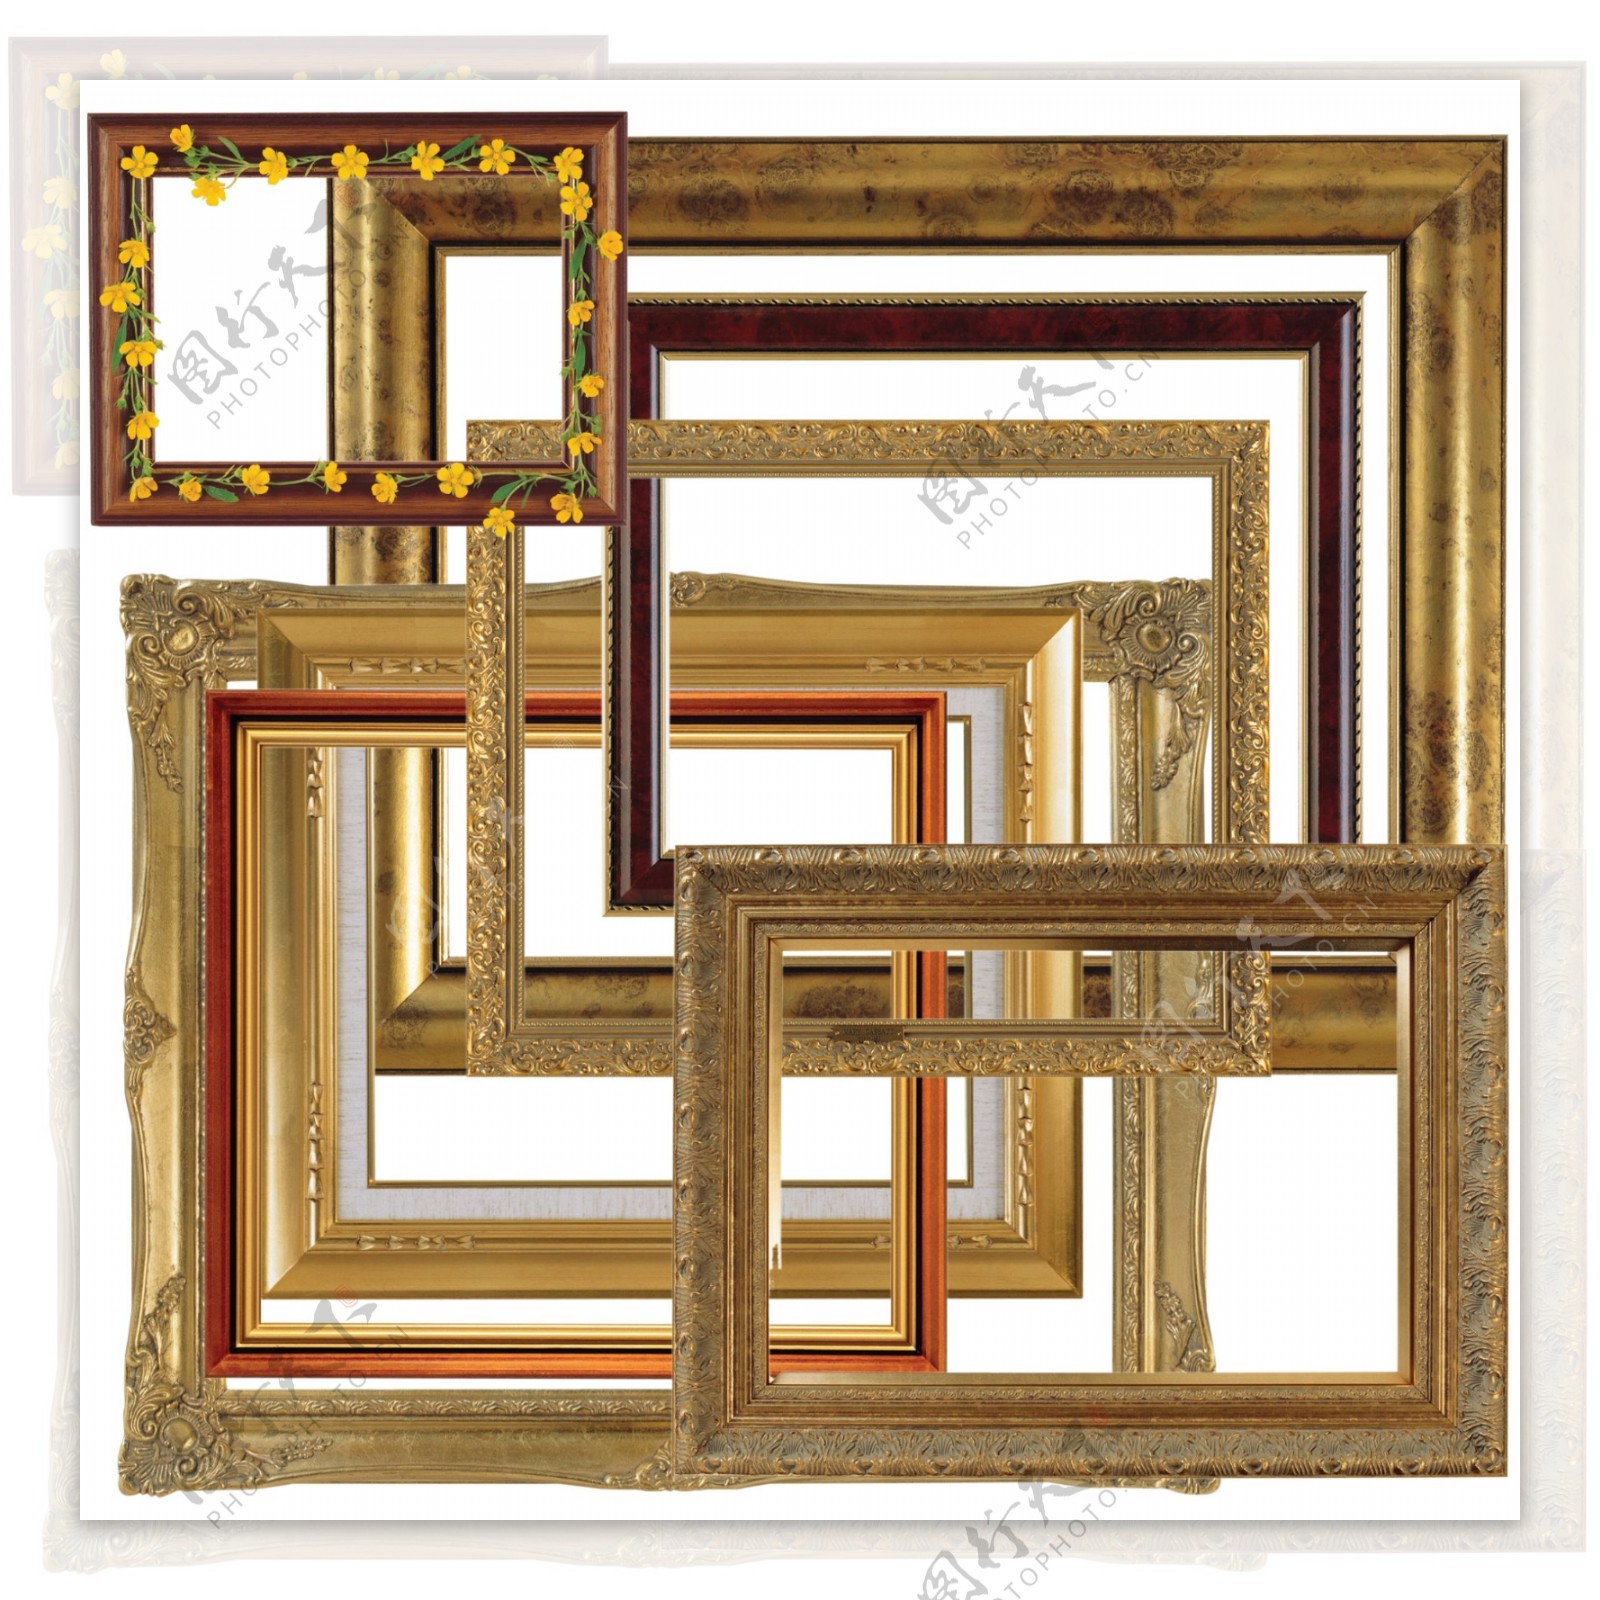 木质相框照片边框素材PSD分层